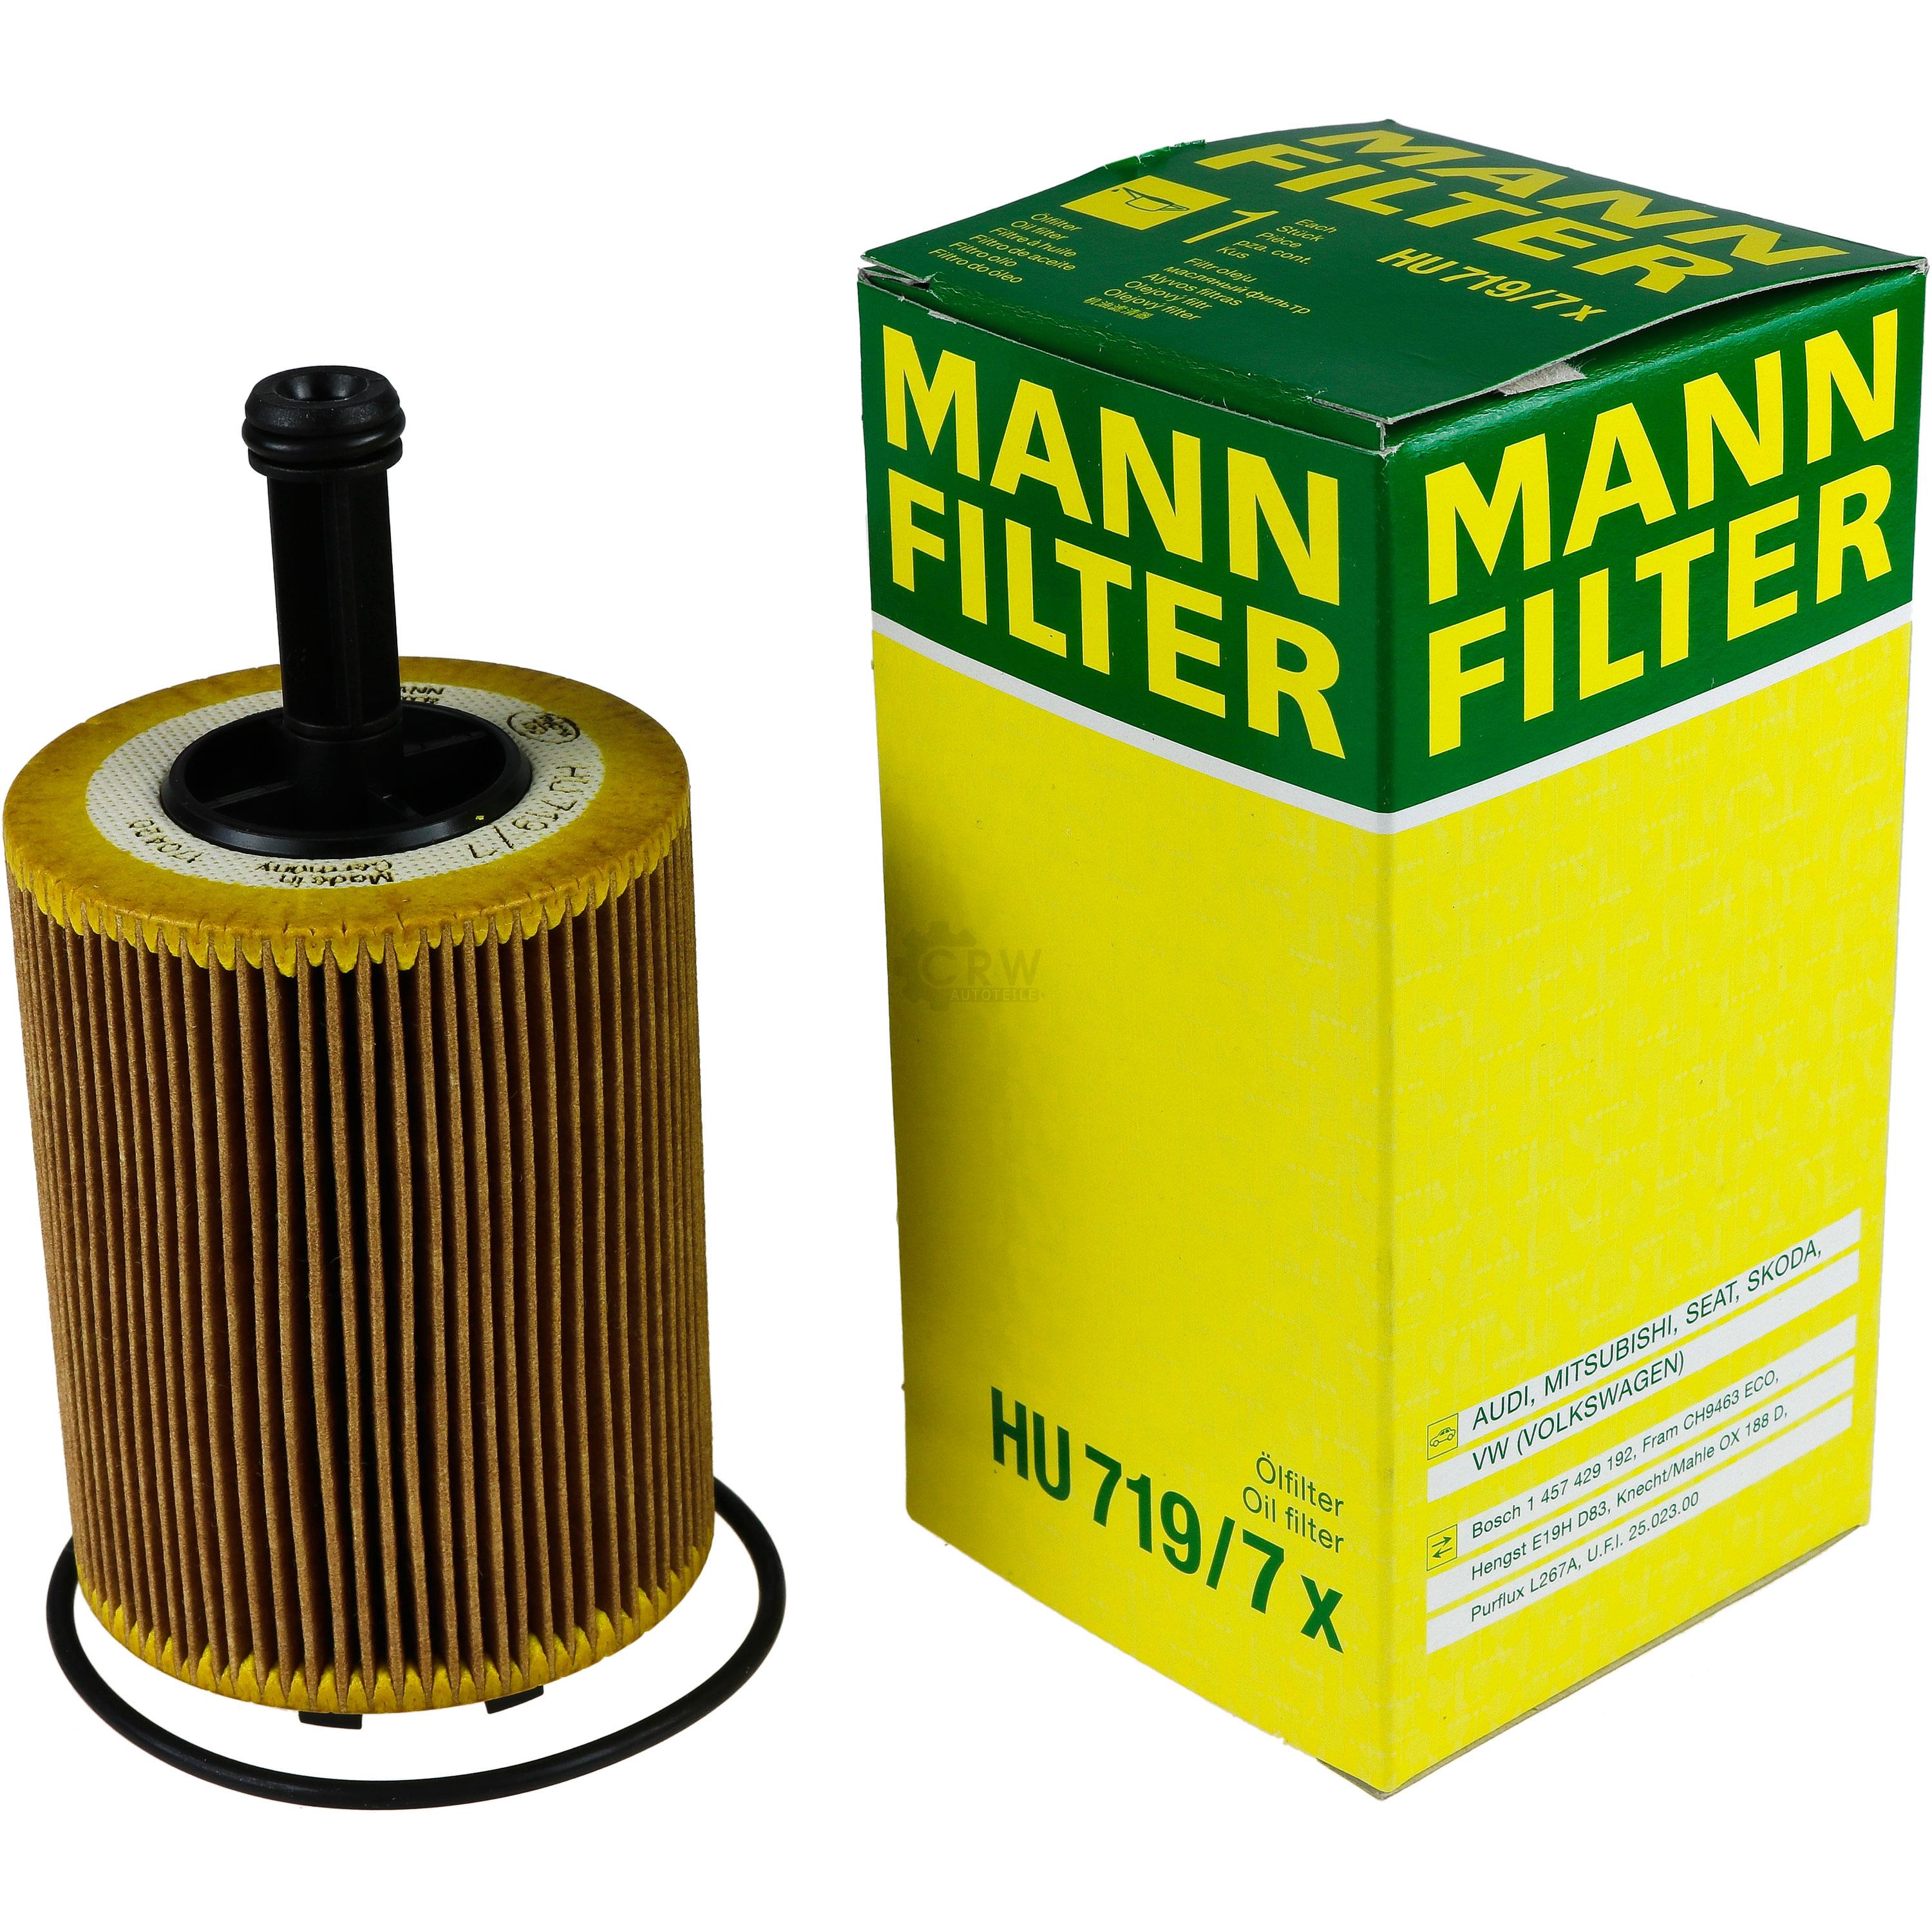 MANN-FILTER Ölfilter HU 719/7 x Oil Filter